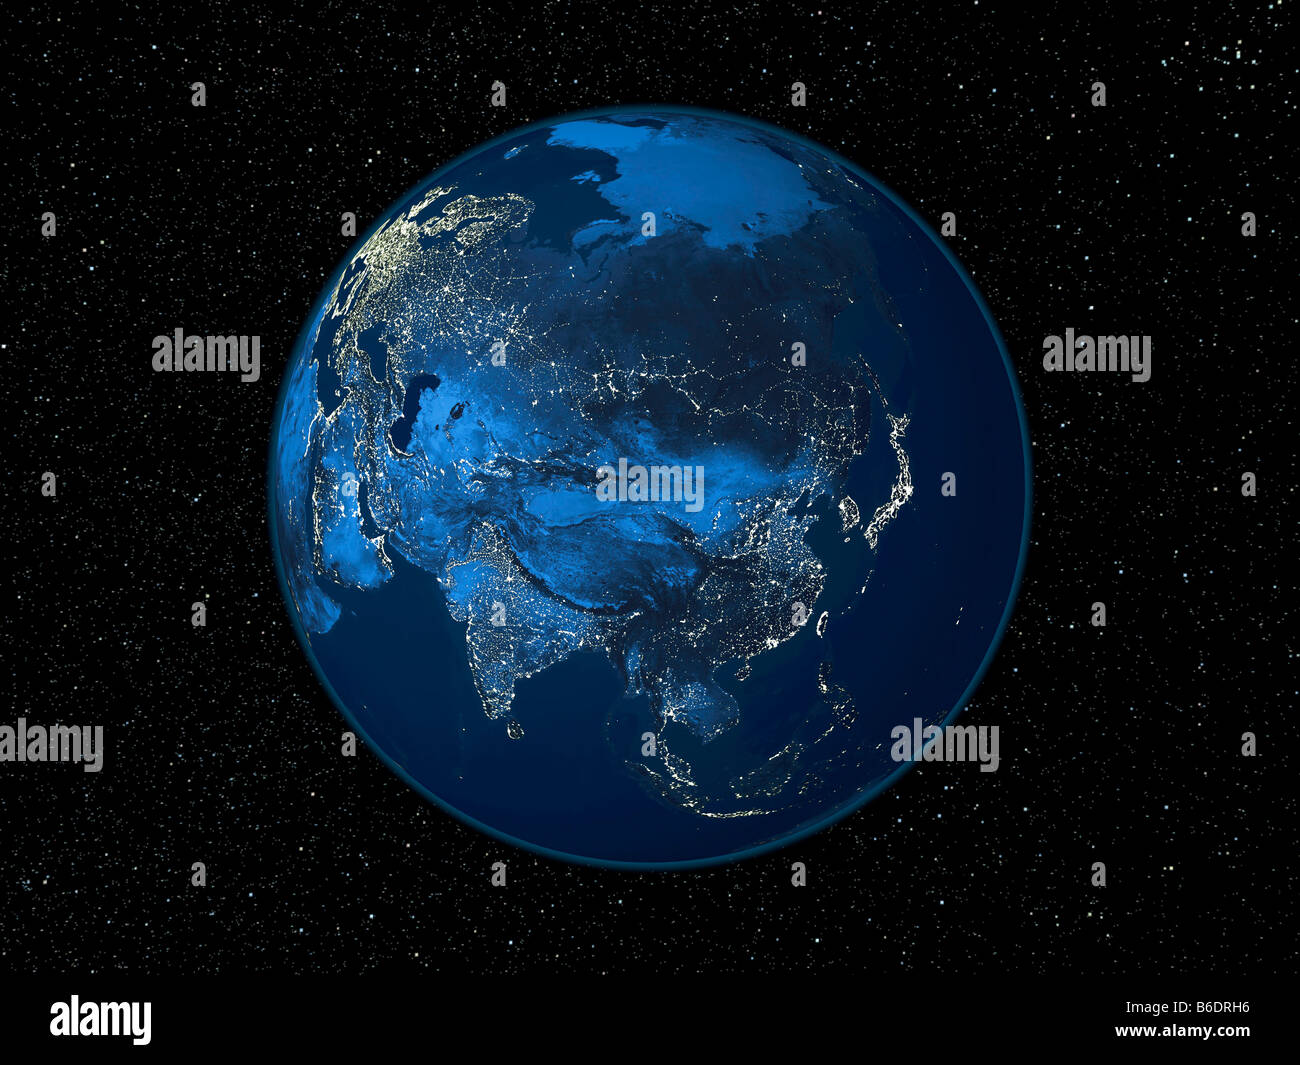 Asia di notte. Immagine satellitare della terra di notte, impostata su uno sfondo di stelle, centrato sul continente asiatico. Foto Stock